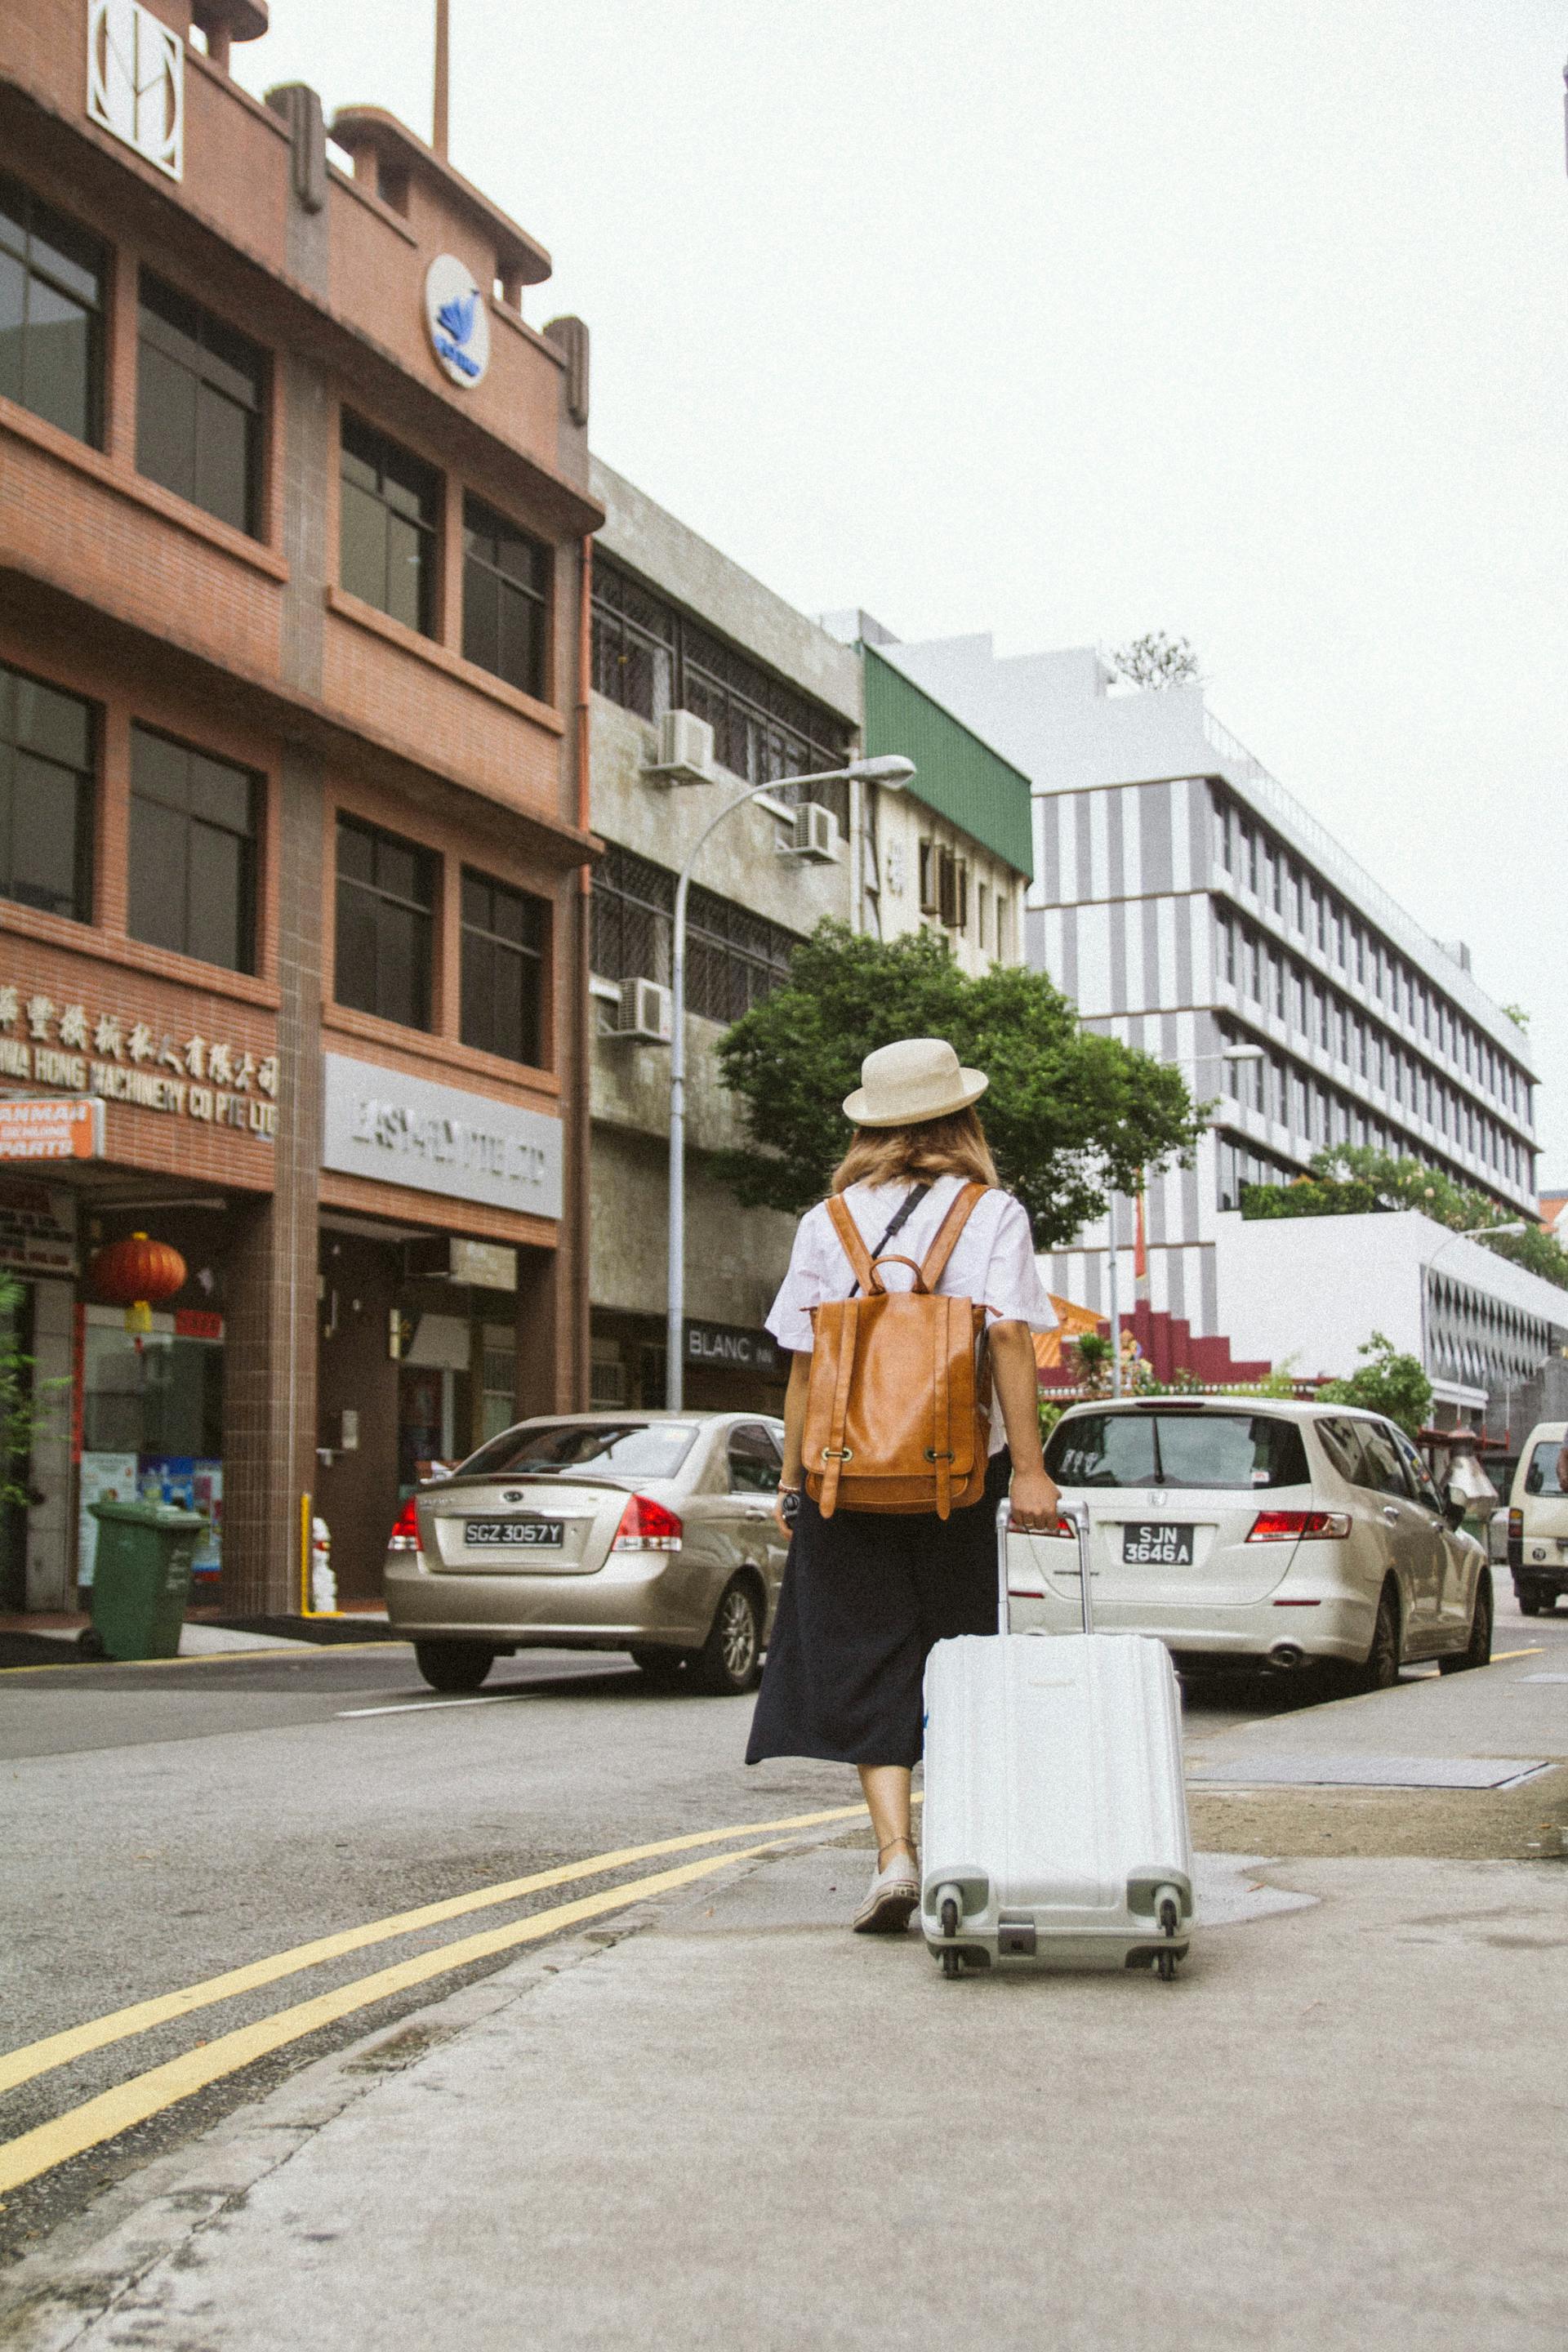 Une femme s'éloignant avec sa valise | Source : Pexels